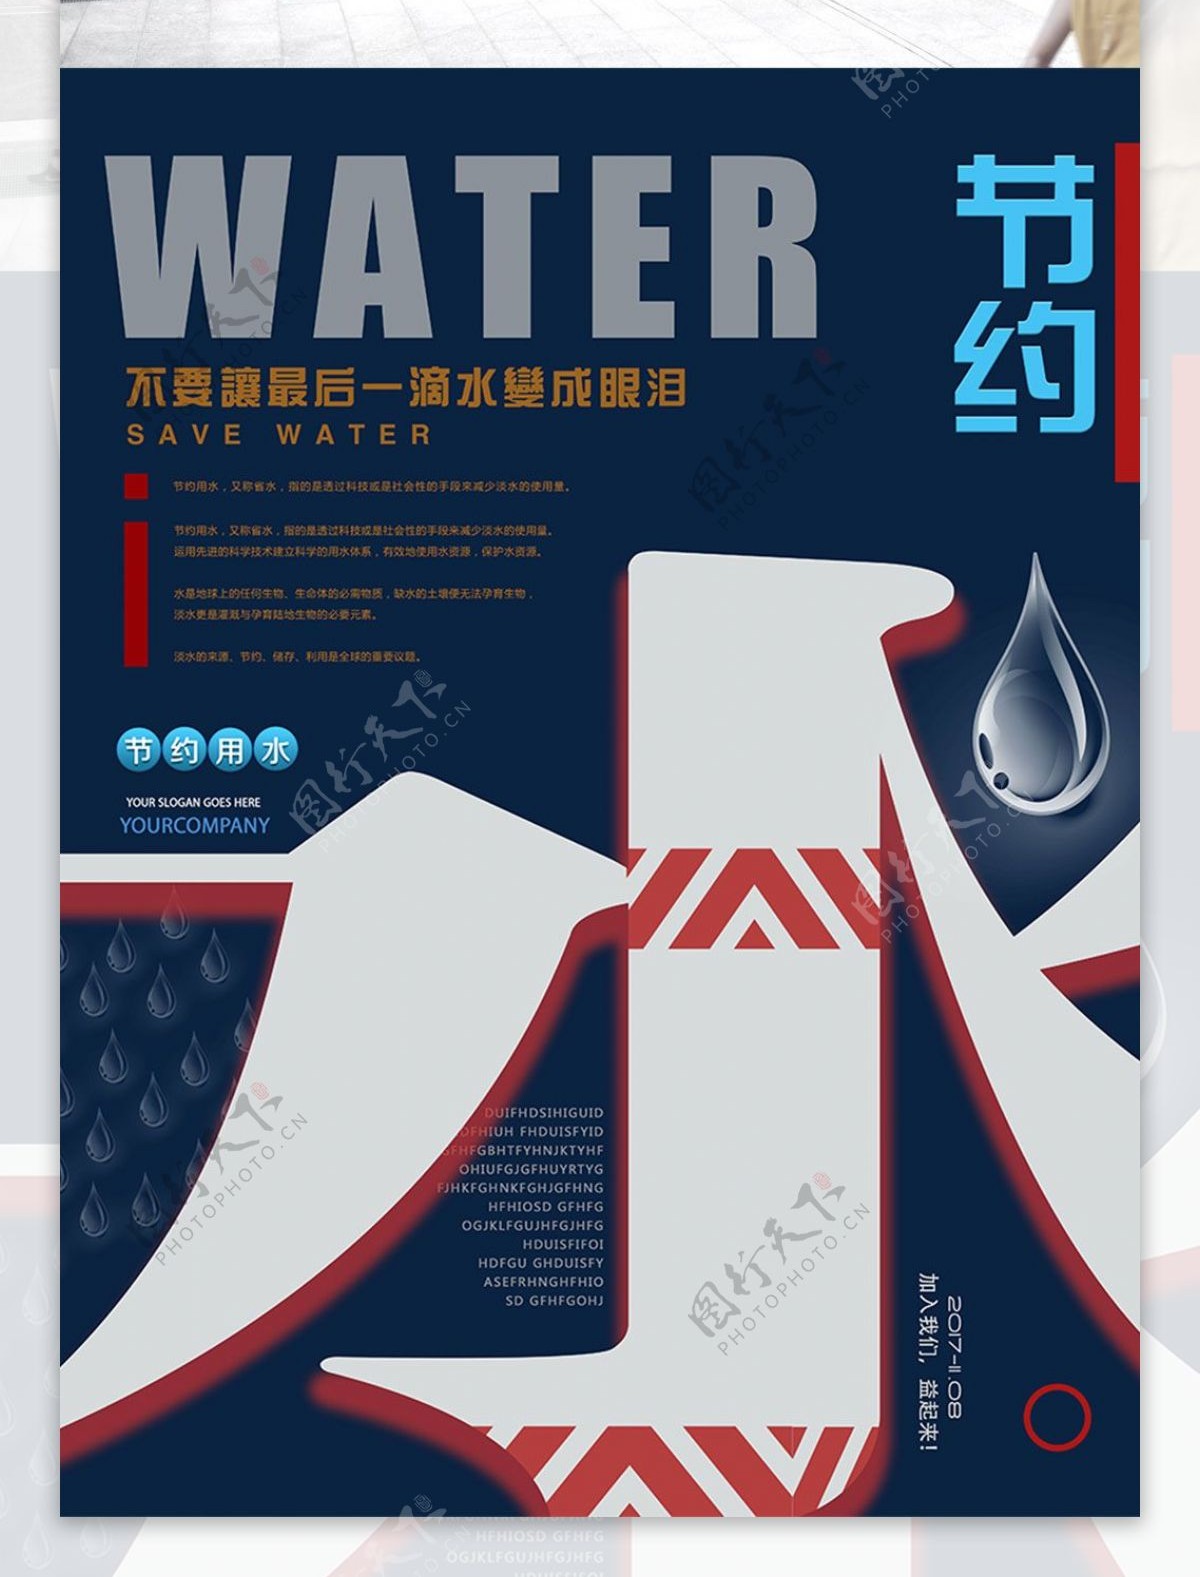 水滴蓝色简约节约用水公益宣传海报